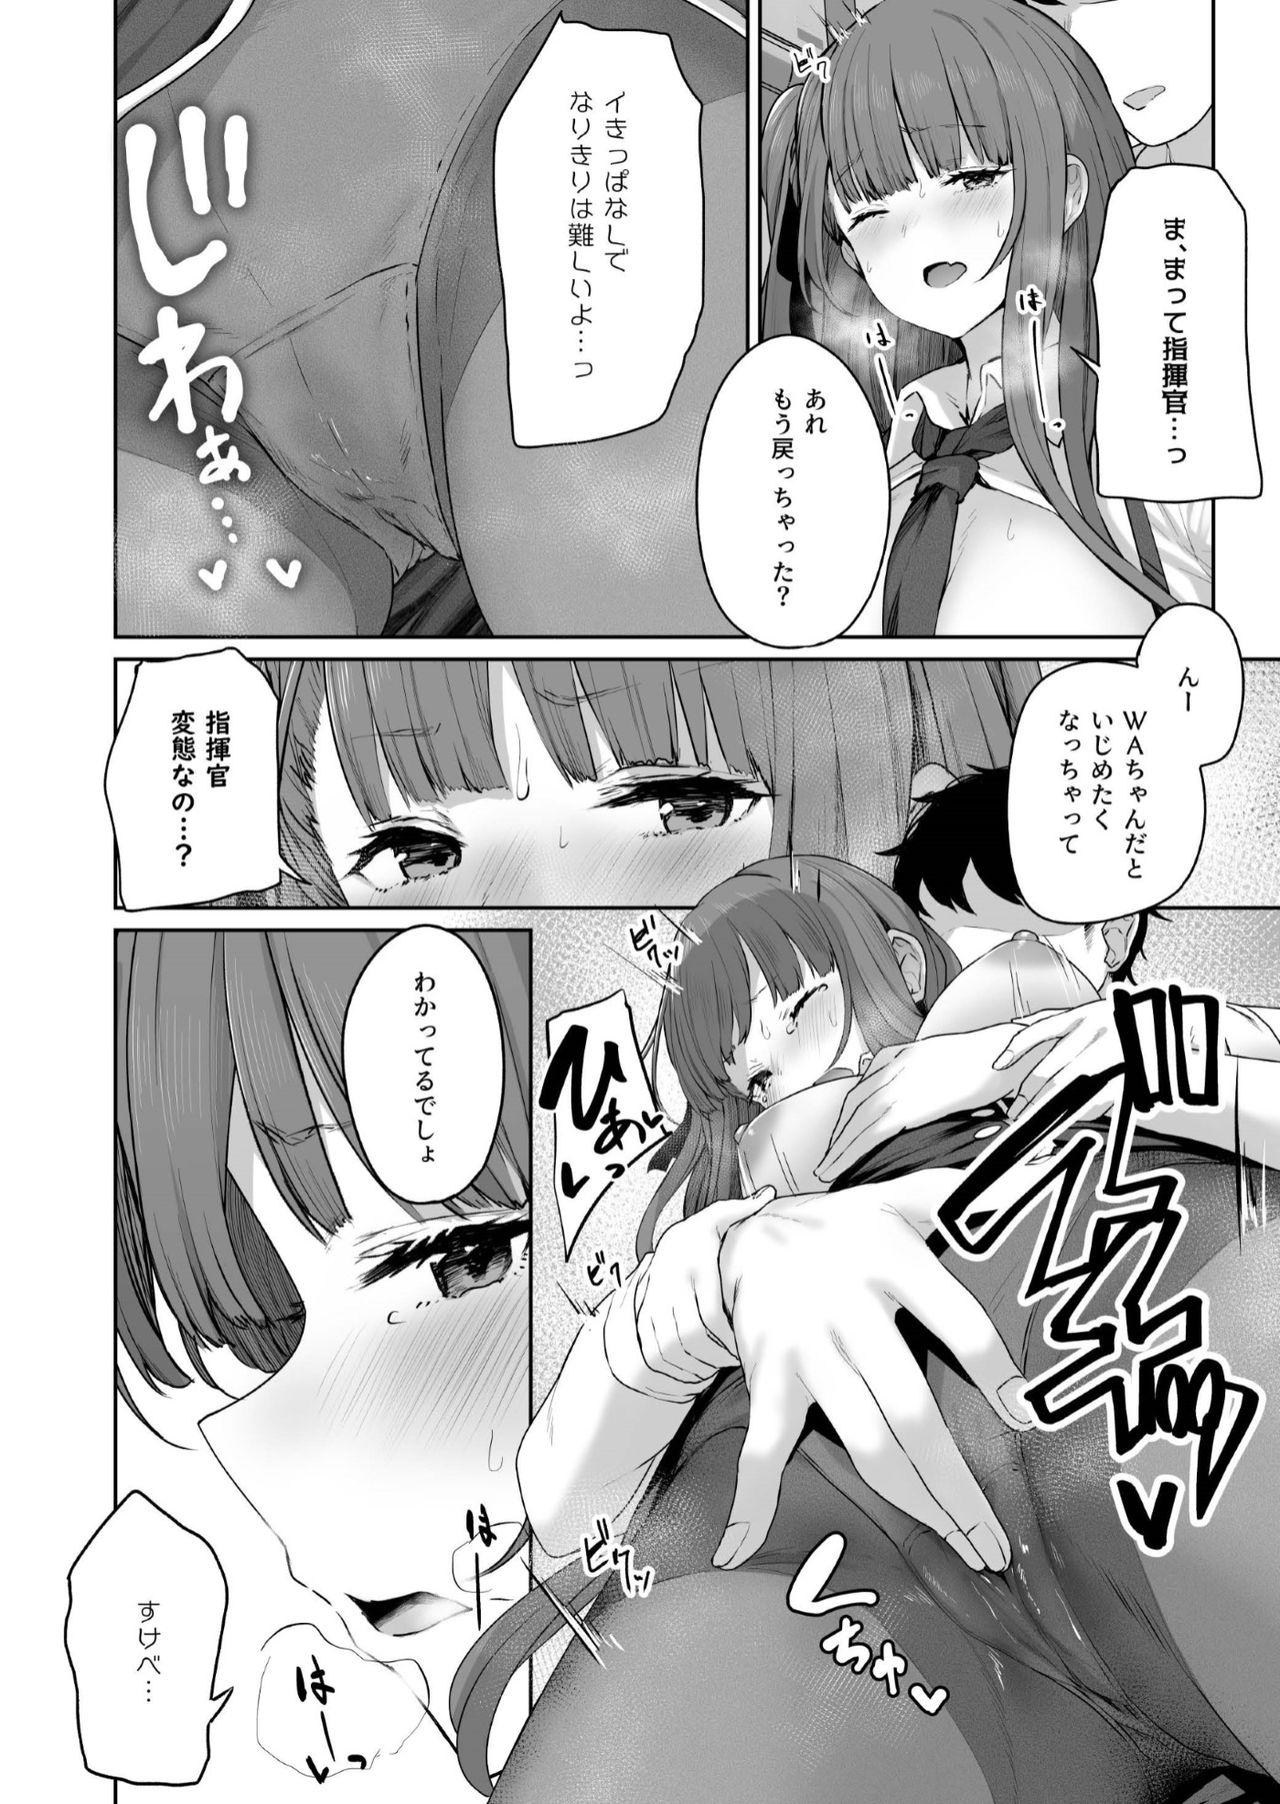 Caught Yuiitsu Muni no Mono nan Dakara - Girls frontline Ass Lick - Page 12